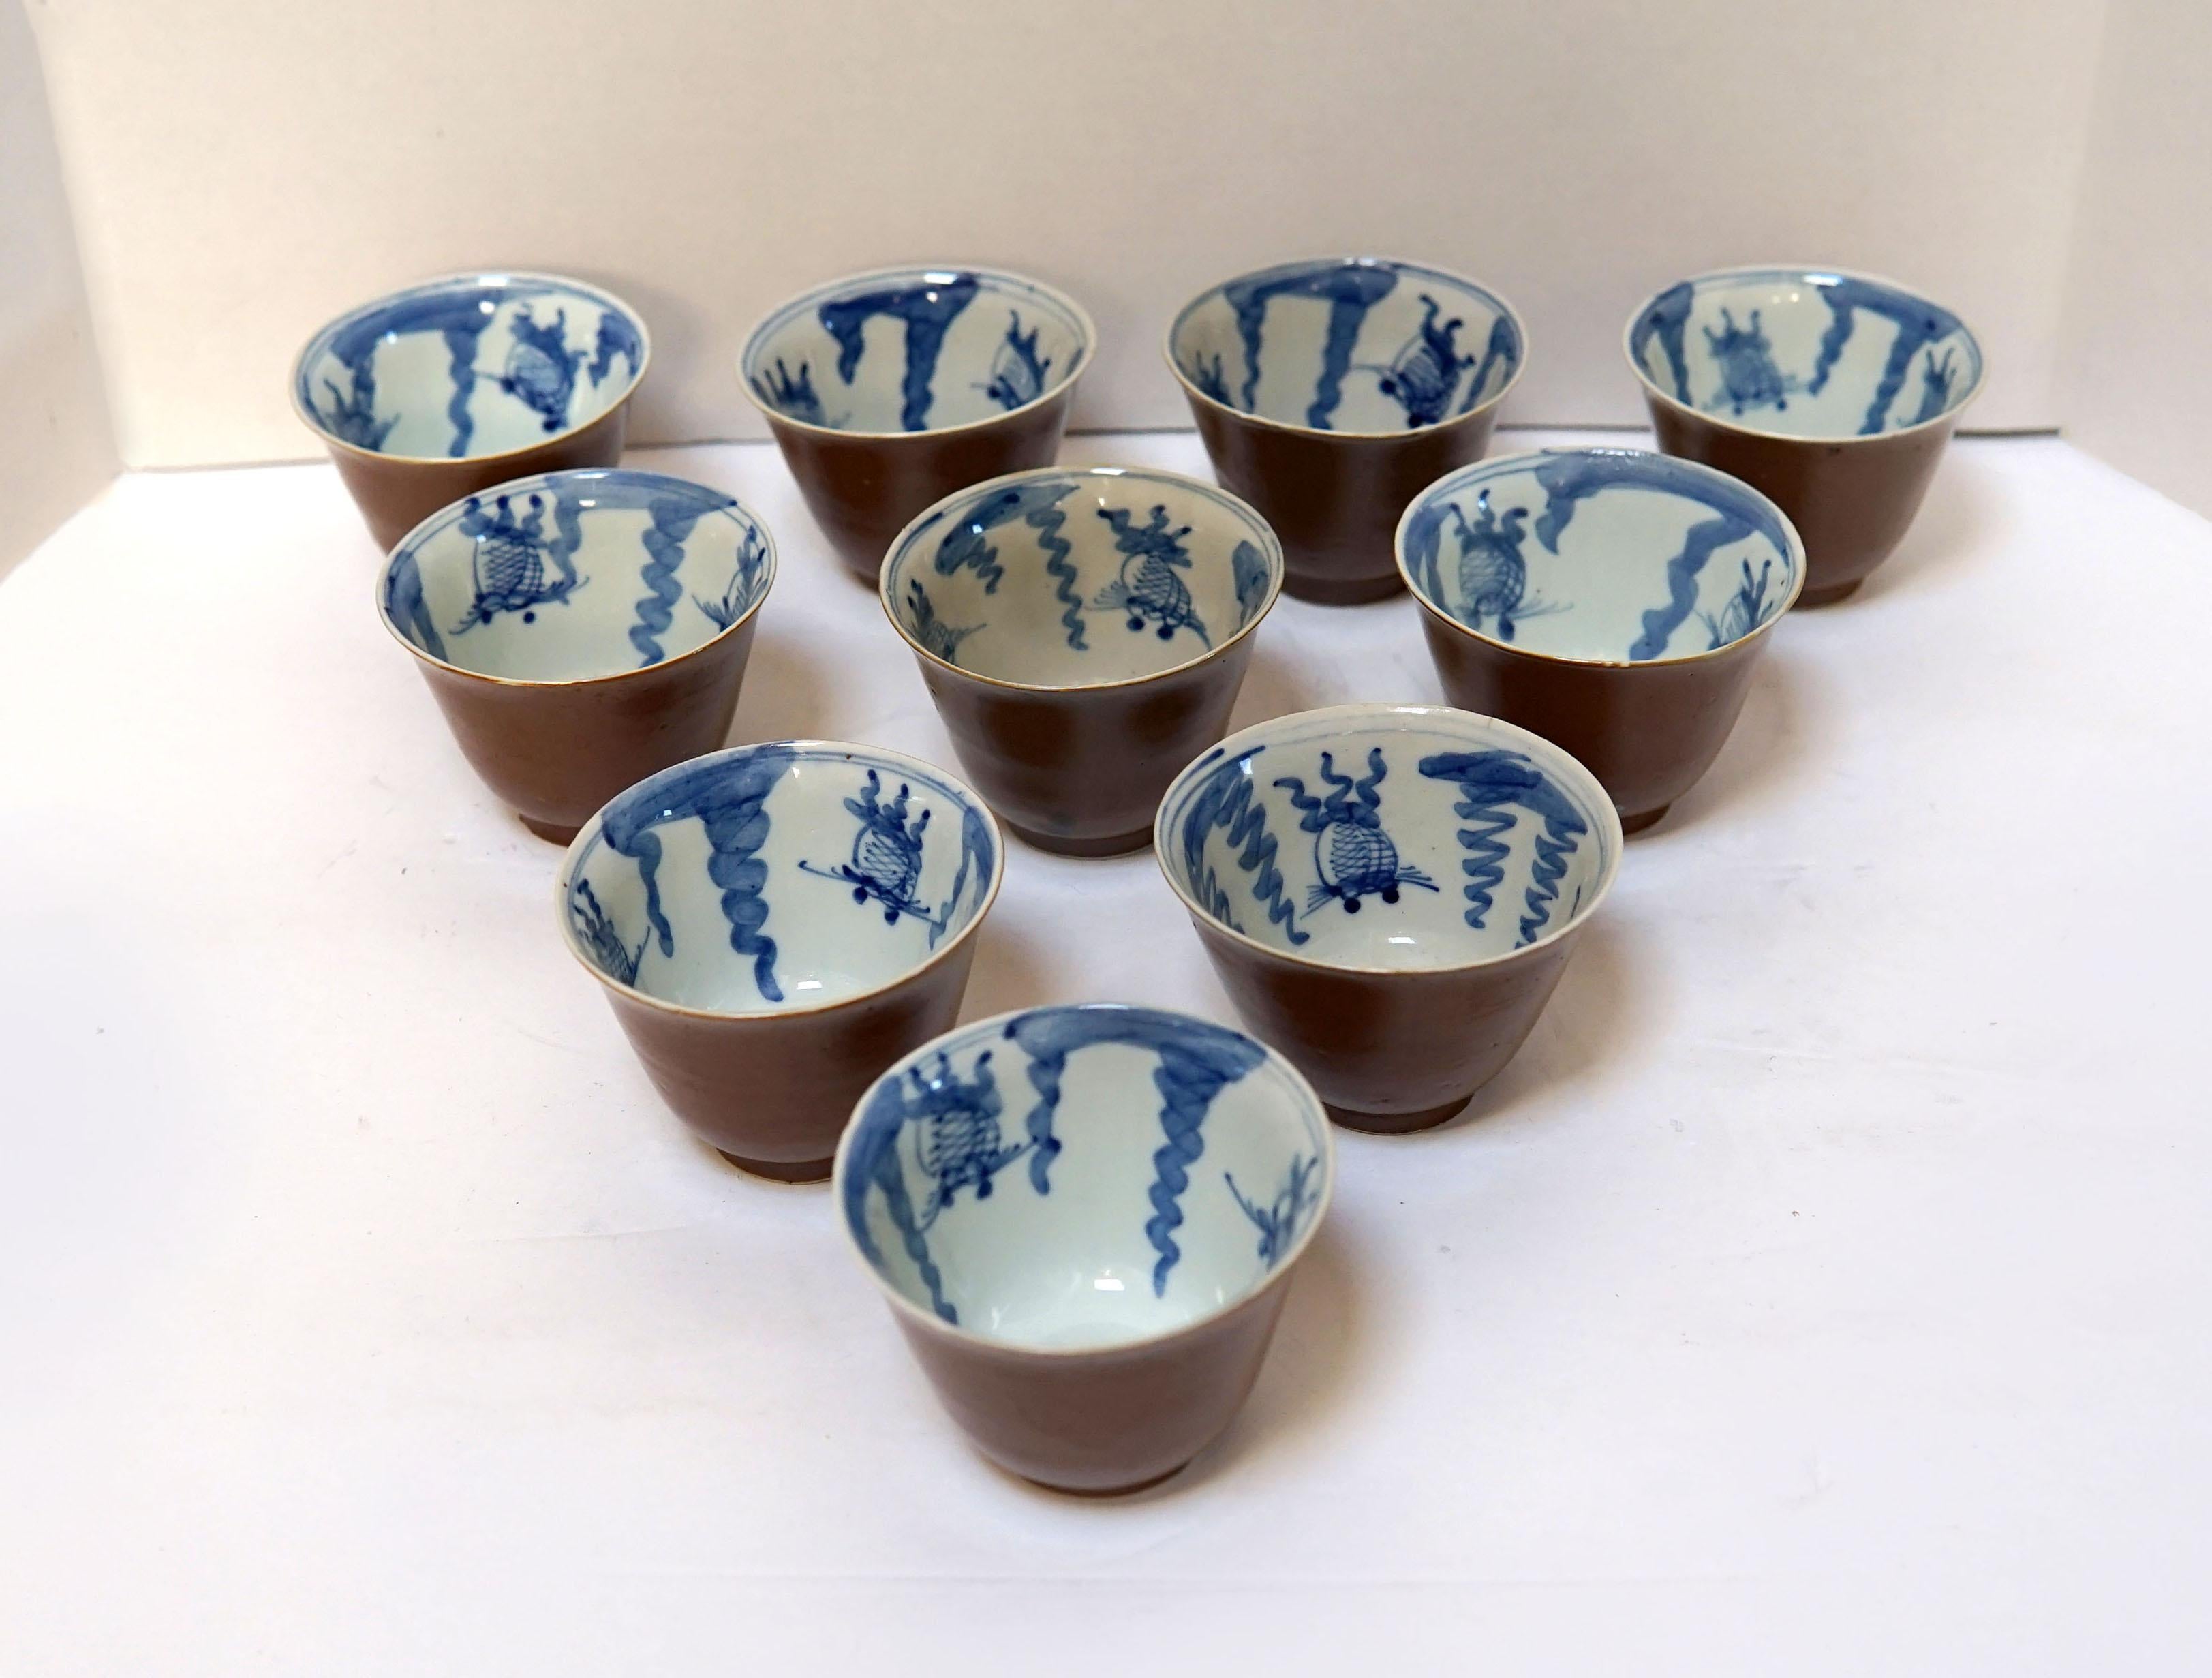 Dieses Set aus alten Teeschalen und einer versilberten oder verzinkten Teekanne aus Japan aus dem 19. Jahrhundert ist ungewöhnlich. 
Das Set stammt aus einer Nachlassauktion, bei der 10 blau-weiße Teeschalen aus Batavia-Porzellan aus dem frühen 20.